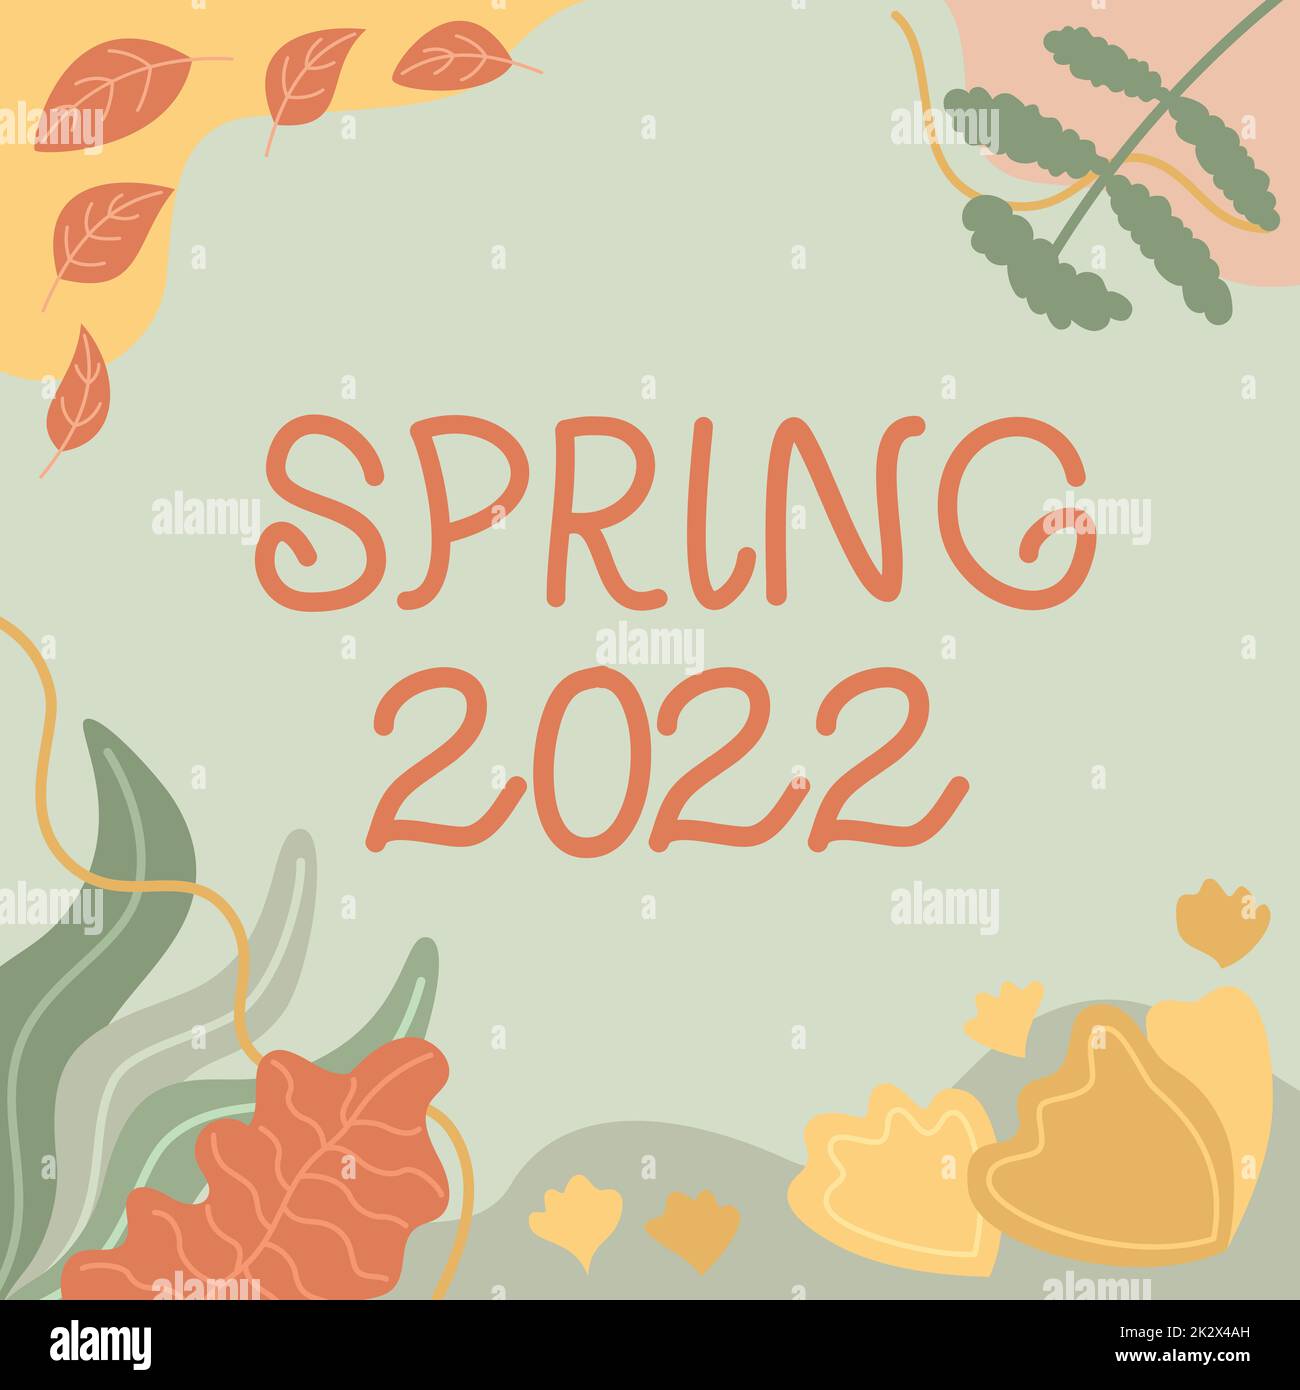 Affiche représentant le printemps 2022. Approche commerciale période de l'année où les fleurs s'élèvent après la saison d'hiver cadre blanc décoré de formes abstraites modernisées fleurs et feuillage. Banque D'Images